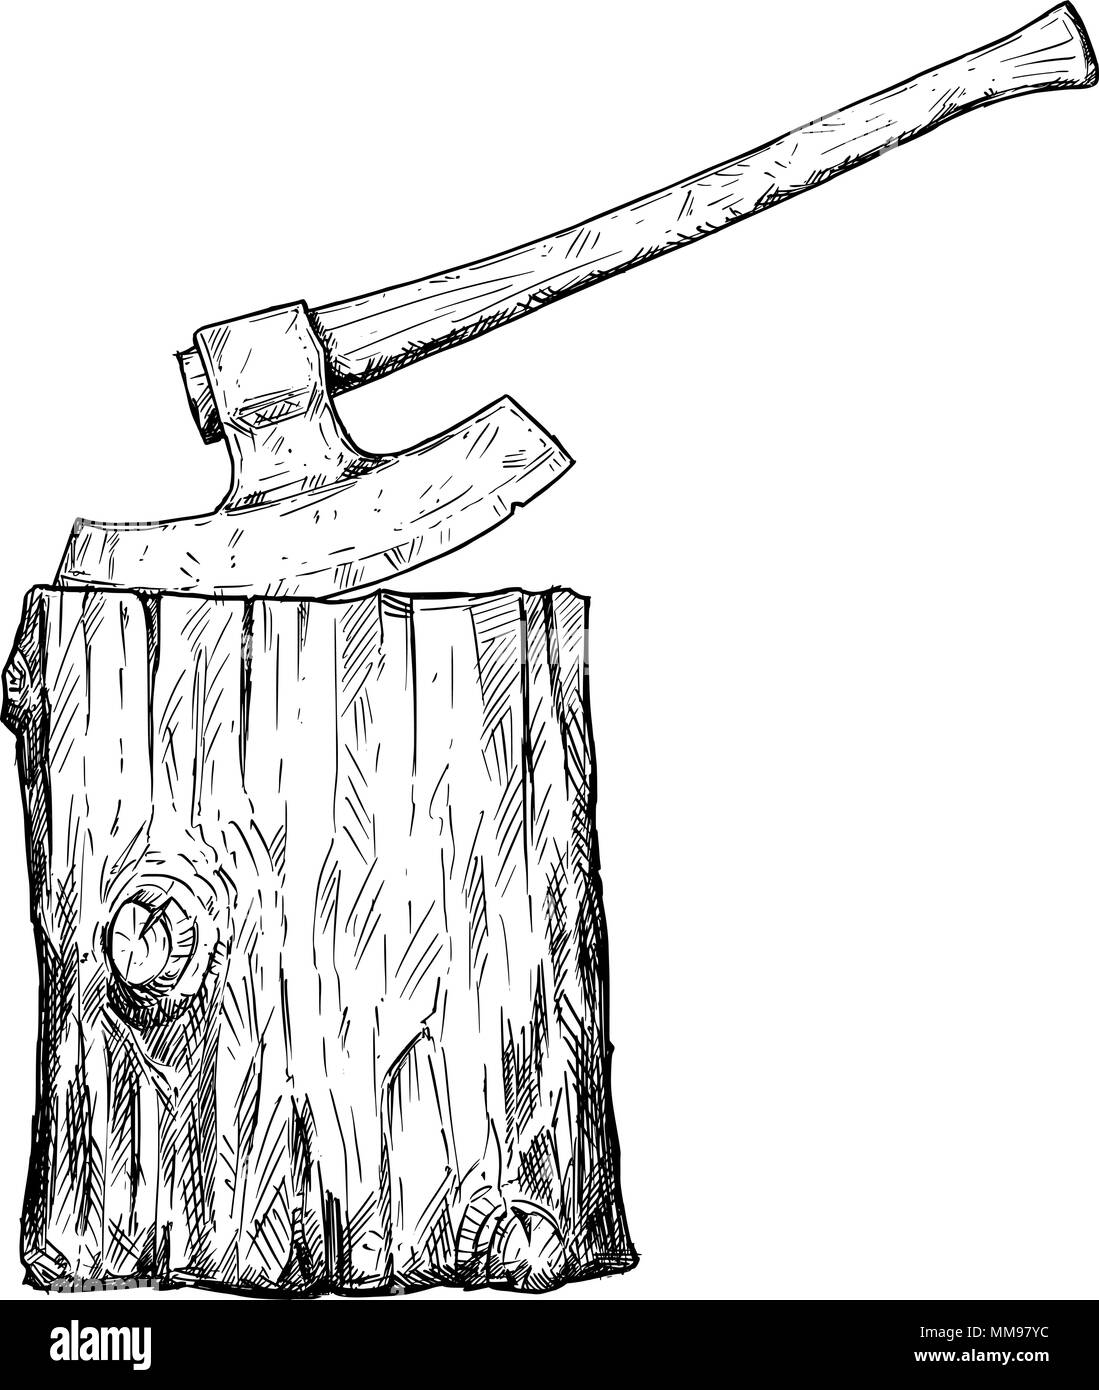 Vektor Künstlerische Zeichnung Abbildung der mittelalterlichen Handbeil oder Ax und Ausführung gesperrt Stock Vektor